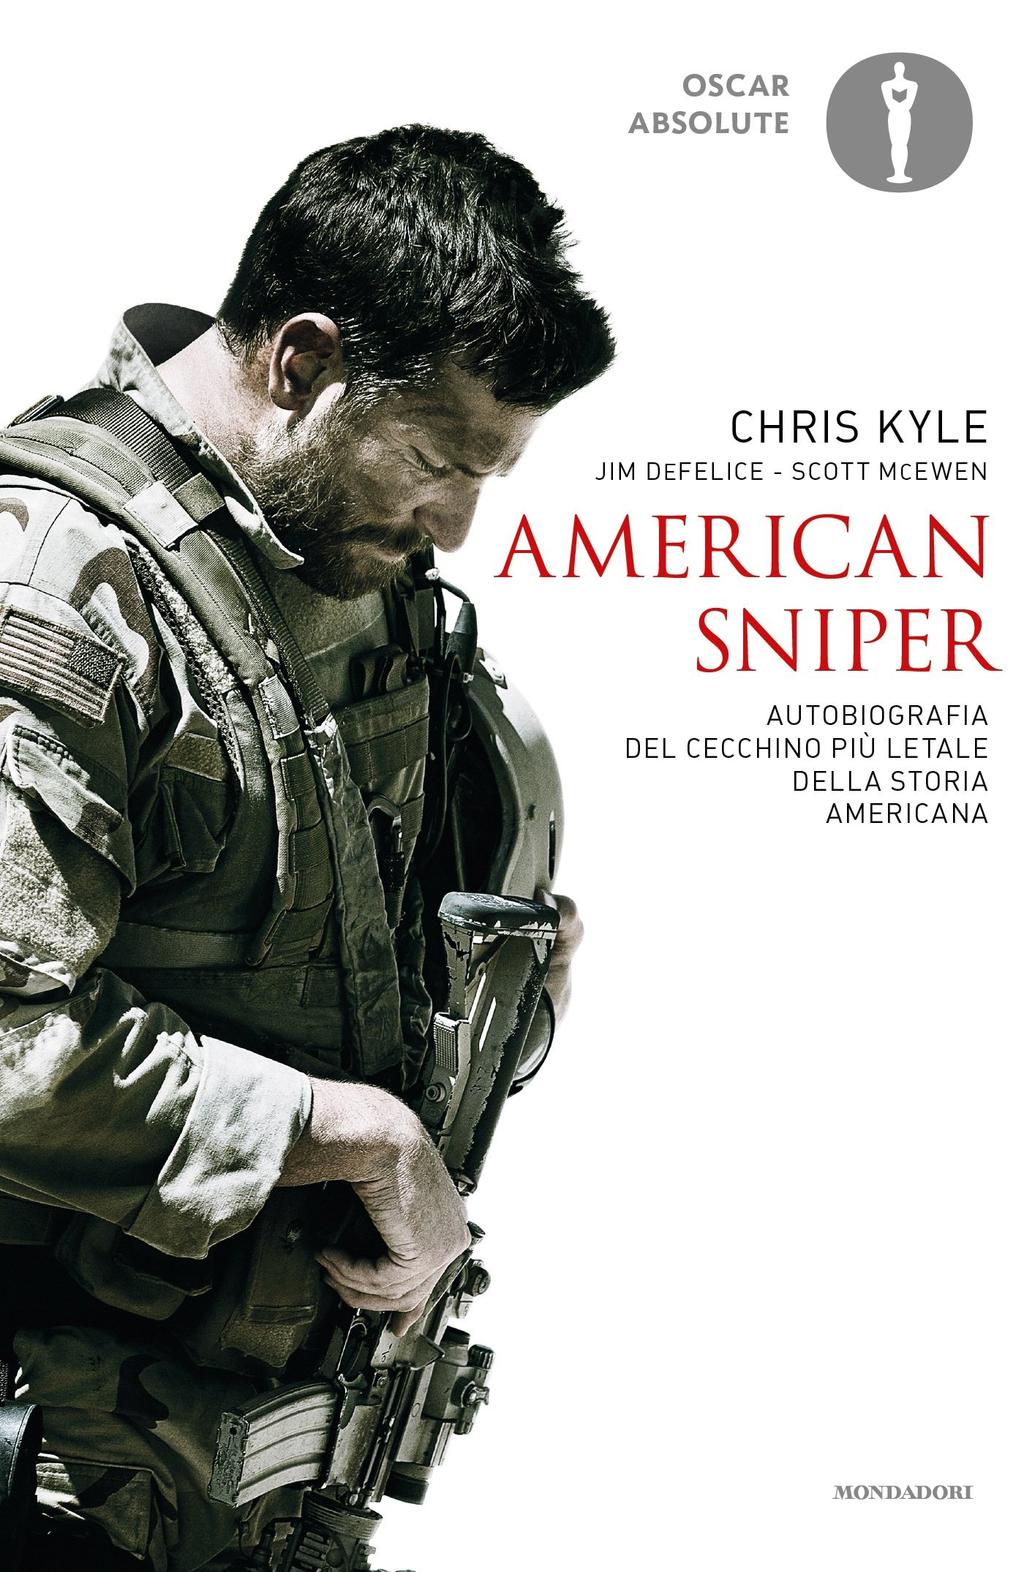 American sniper: Autobiografia del cecchino più letale della storia americana Tra il 1999 e il 2009 Chris Kyle, membro dei Navy SEAL degli Stati Uniti, ha fatto registrare il più alto numero di